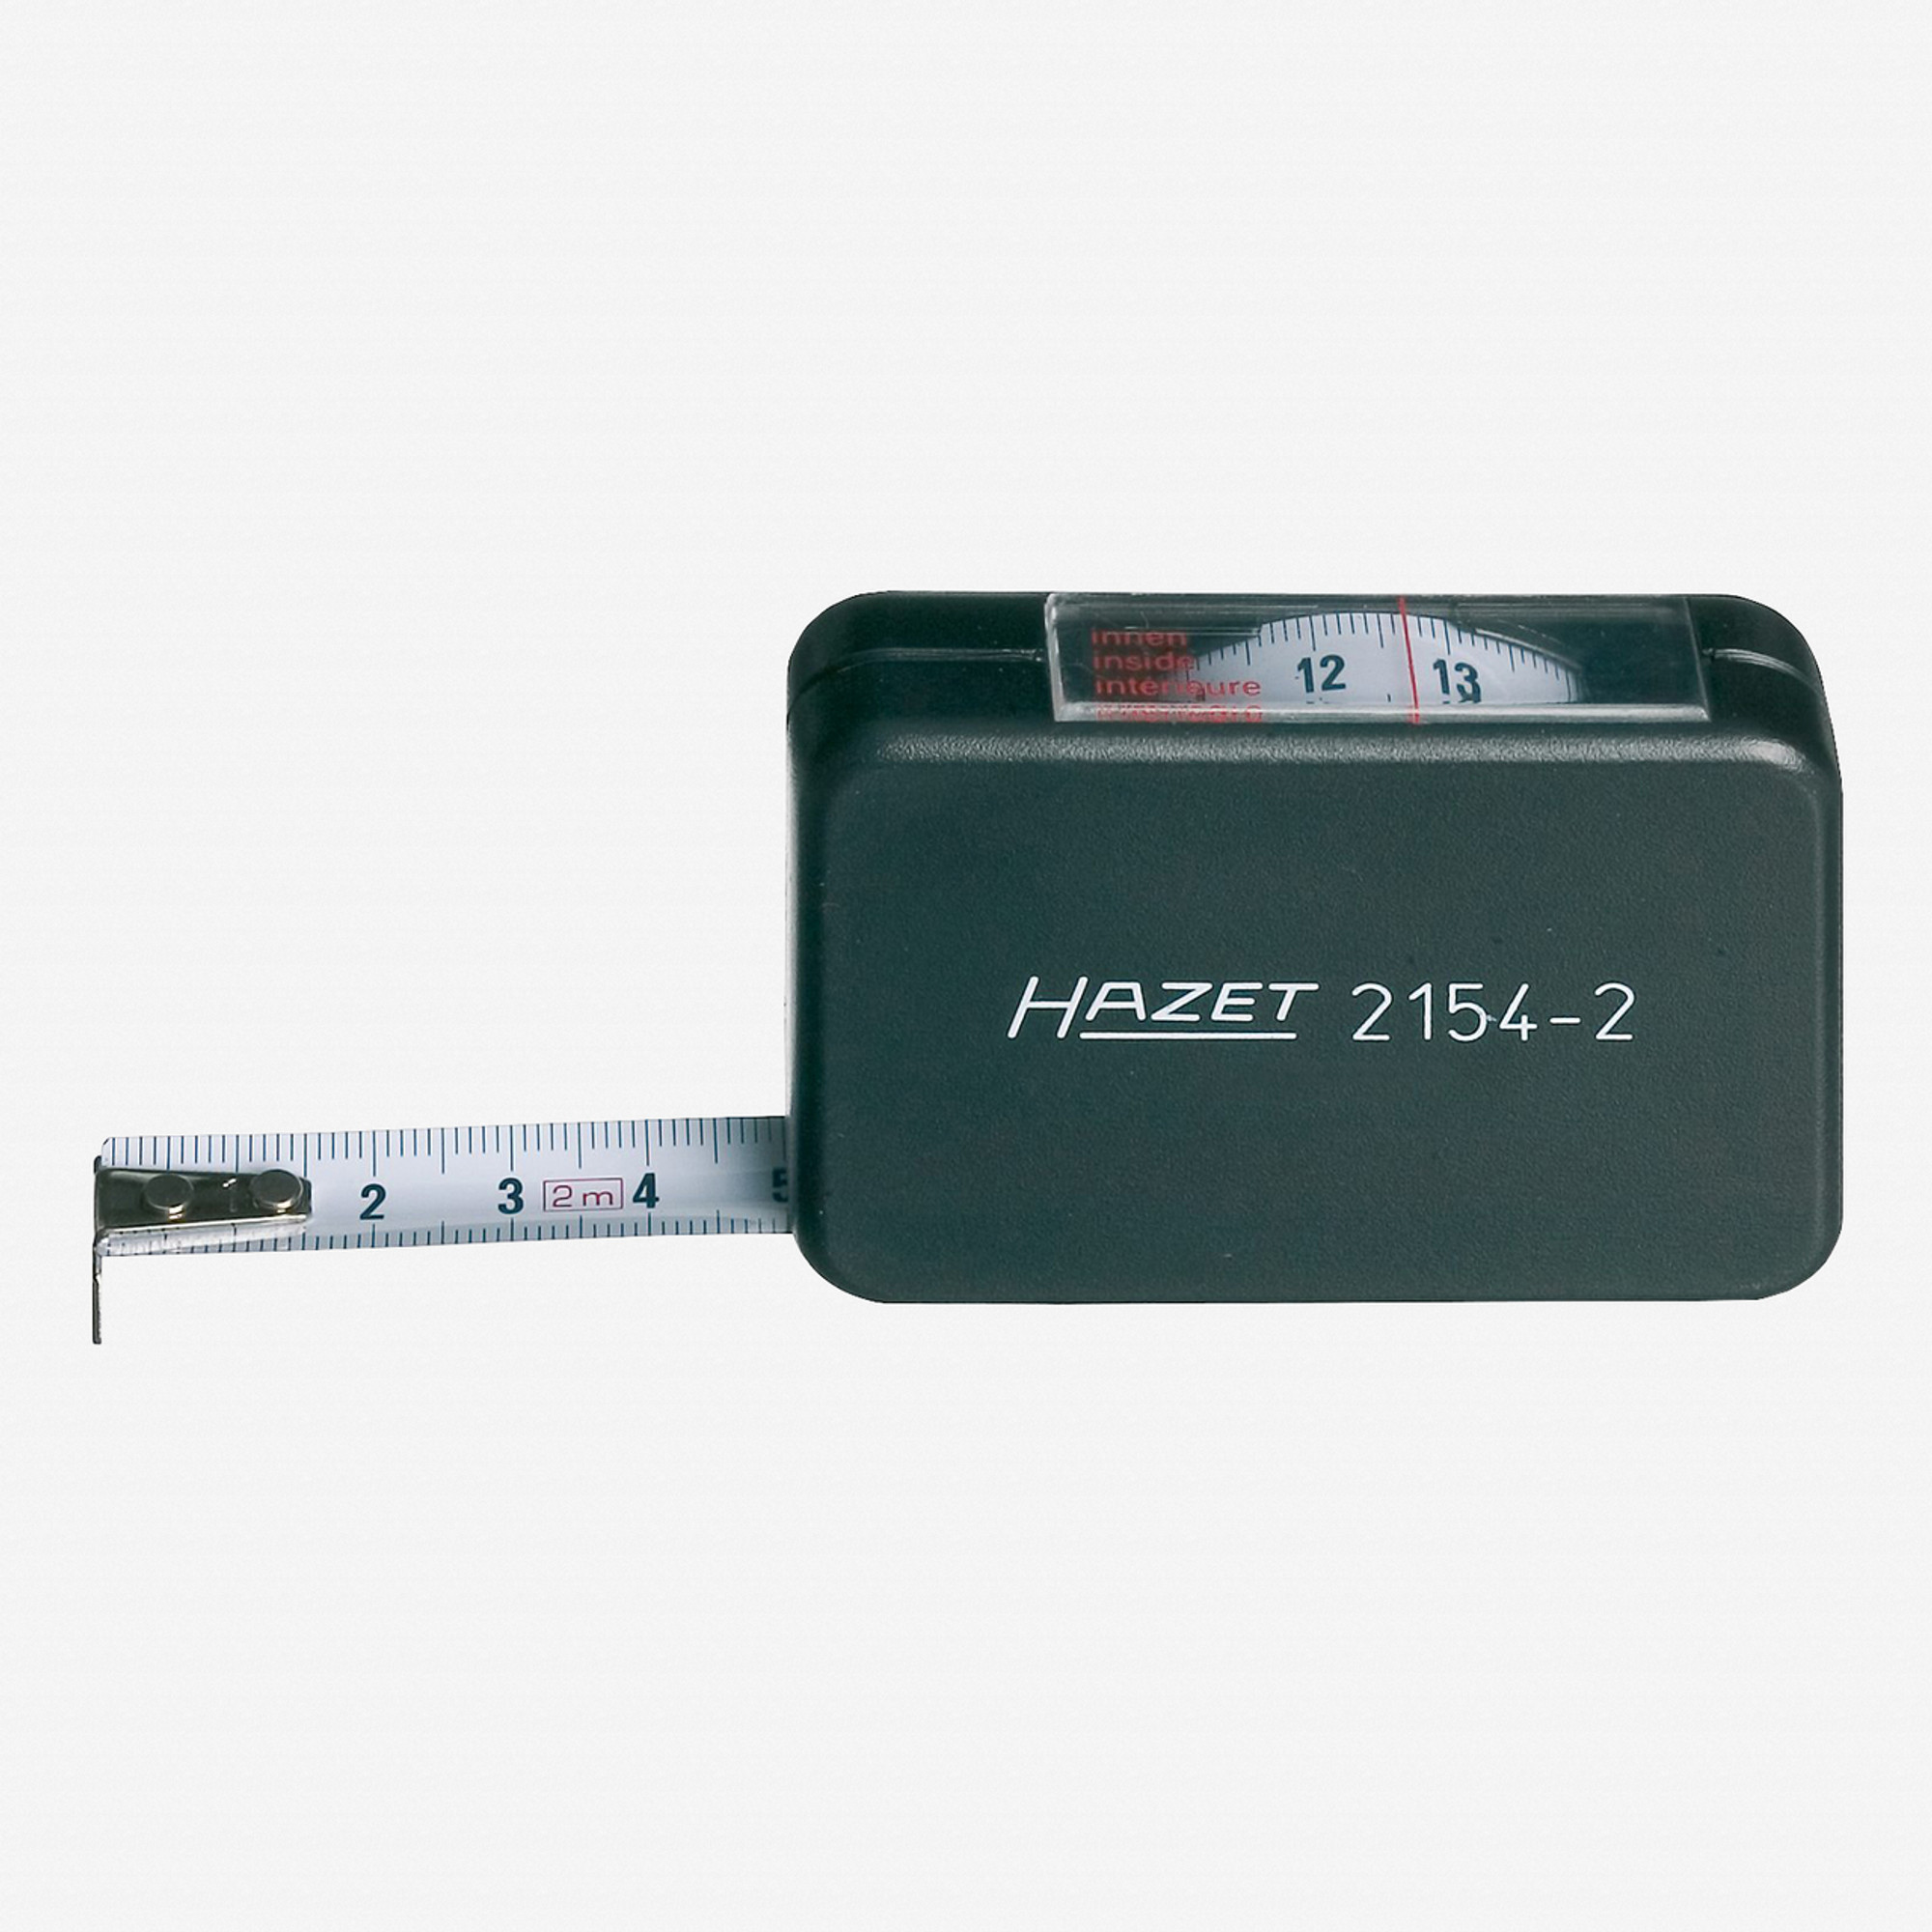 Hazet 2154-2 Measuring tape 2m - KC Tool